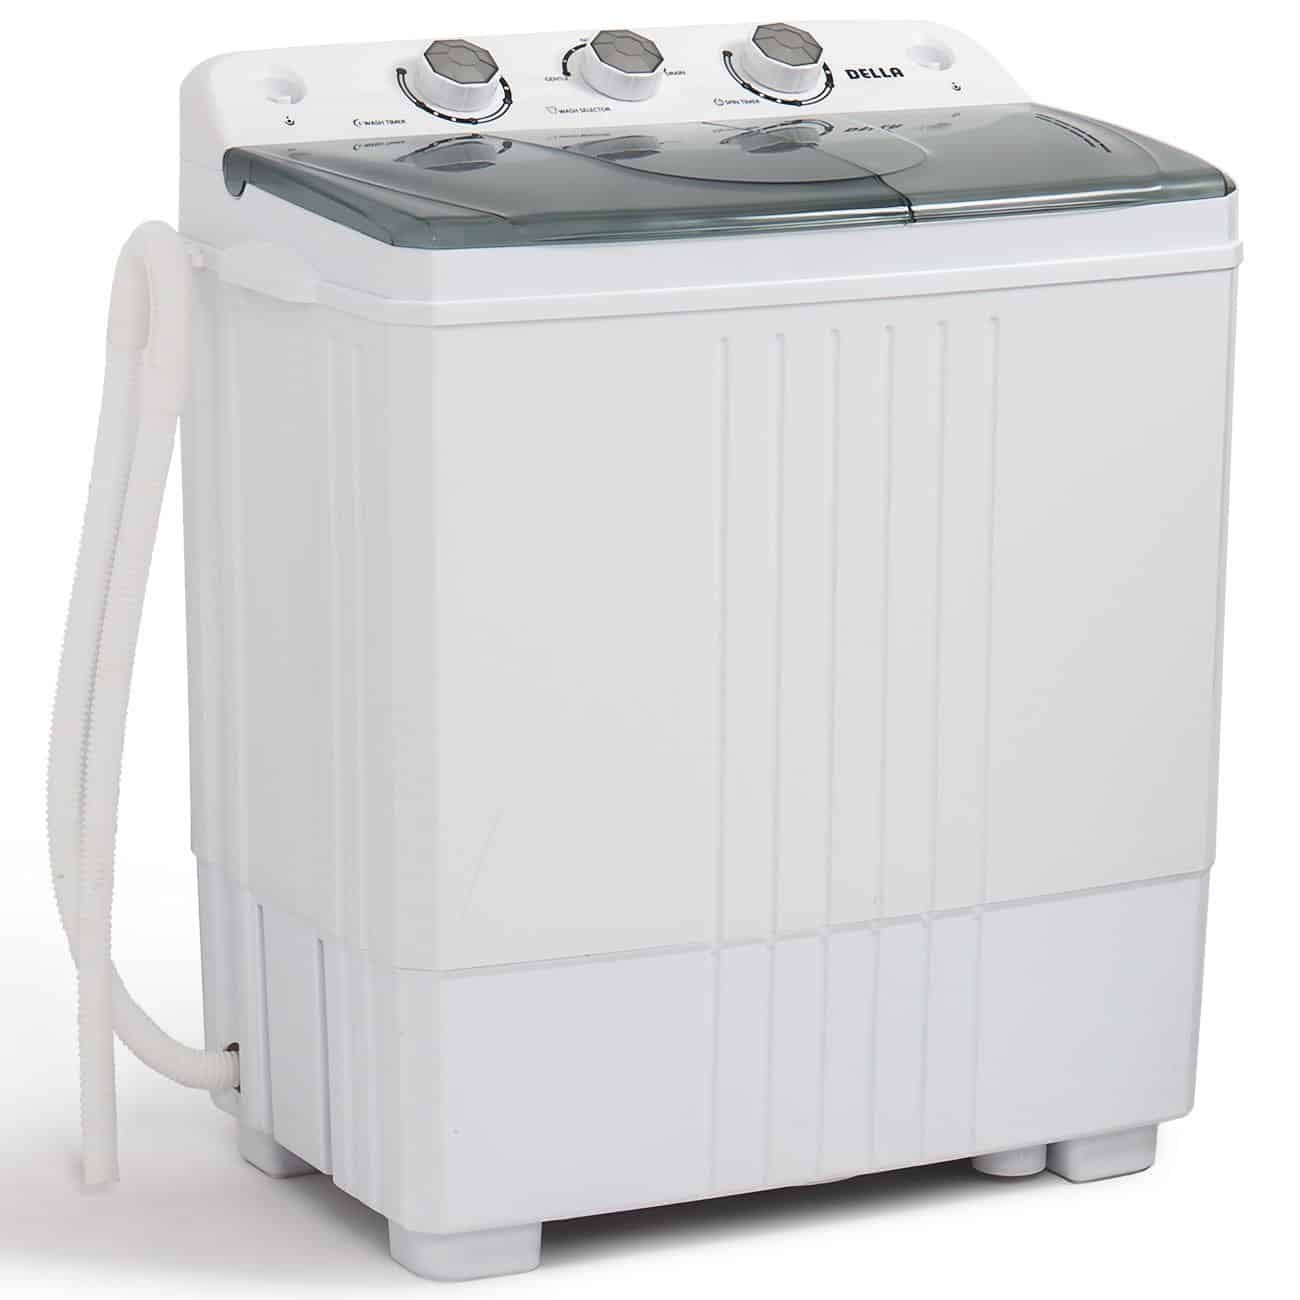 Della Small compact portable washing machine